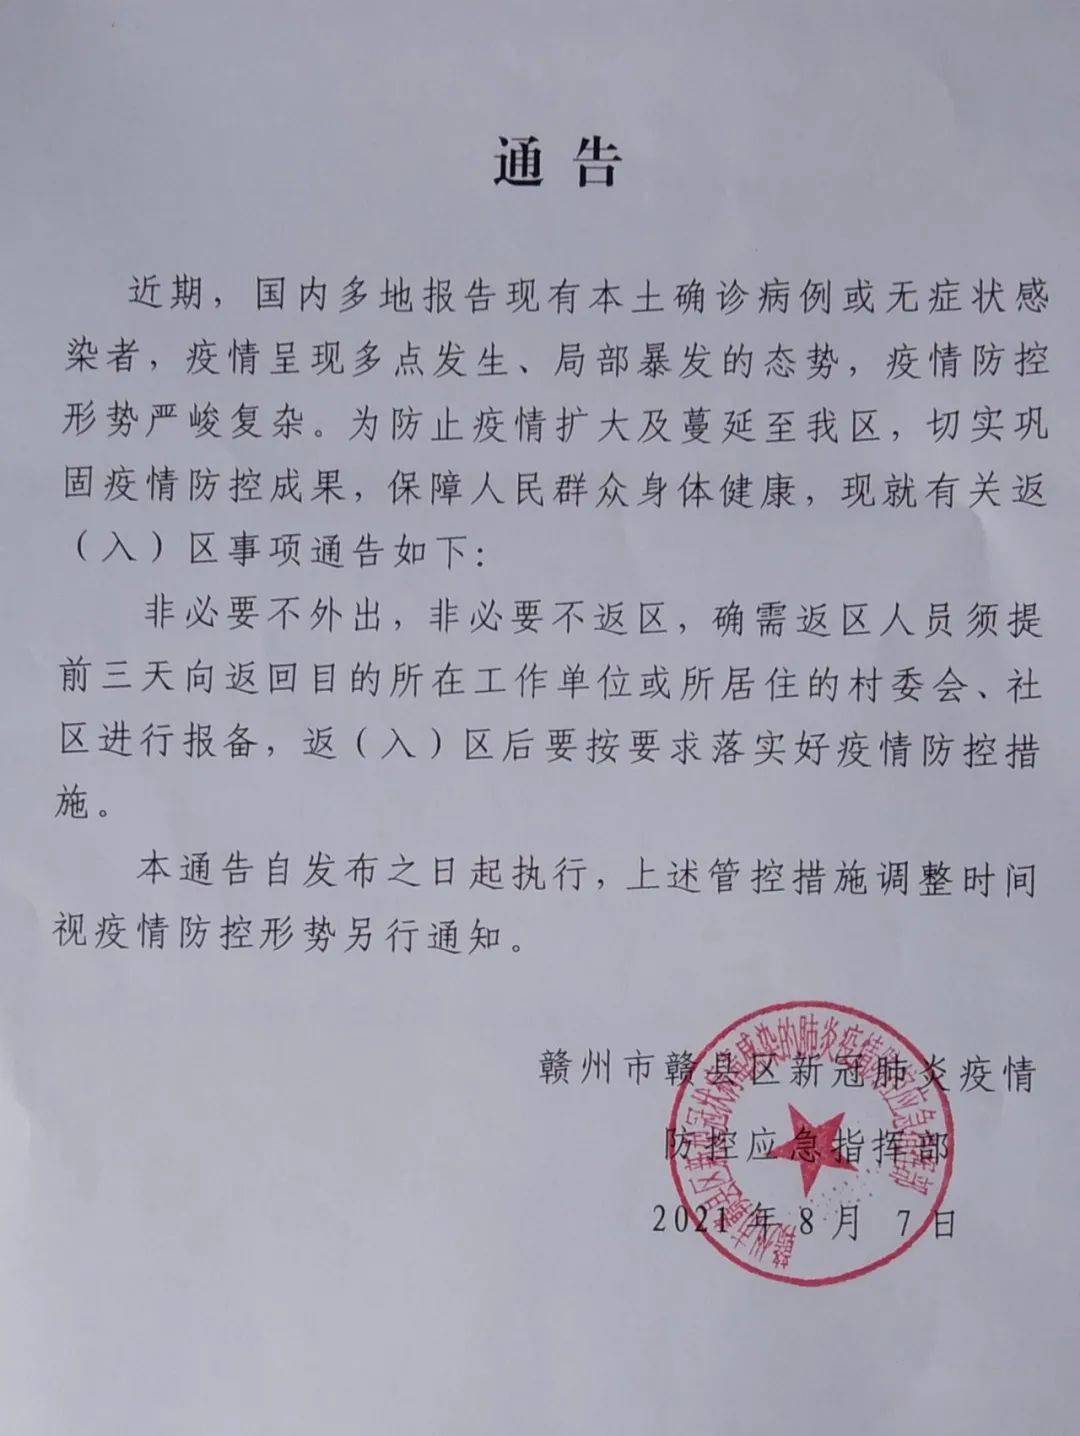 赣县区连发两个通告 疫情防控再升级!